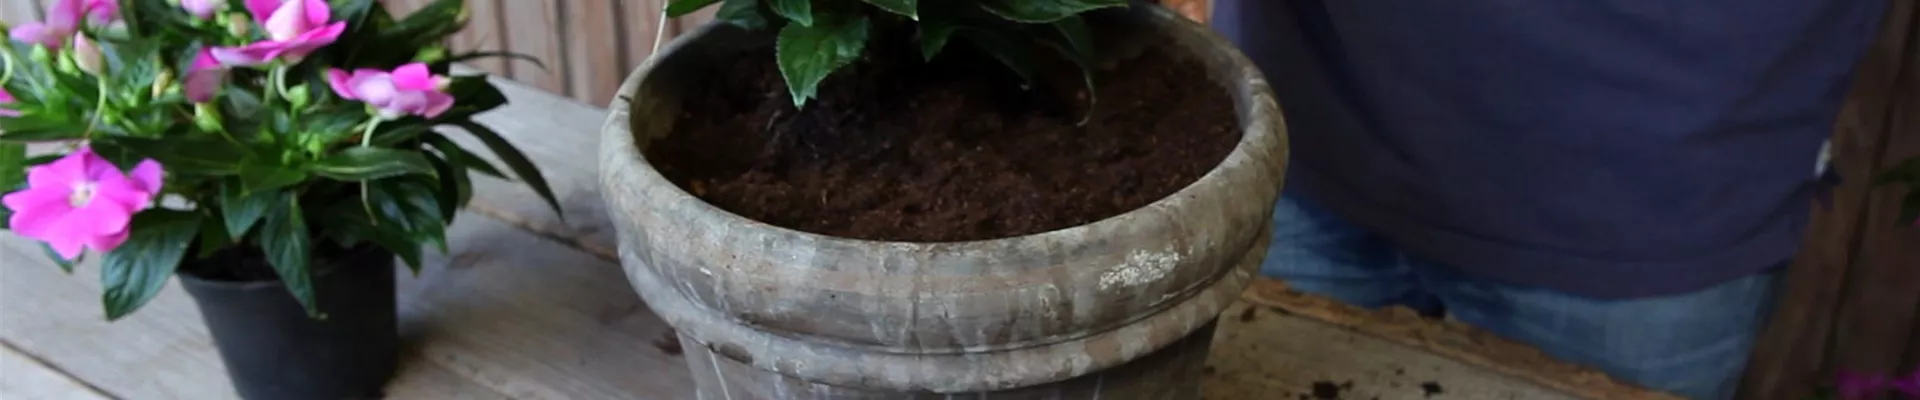 Edellieschen - Einpflanzen in ein Gefäß (4)